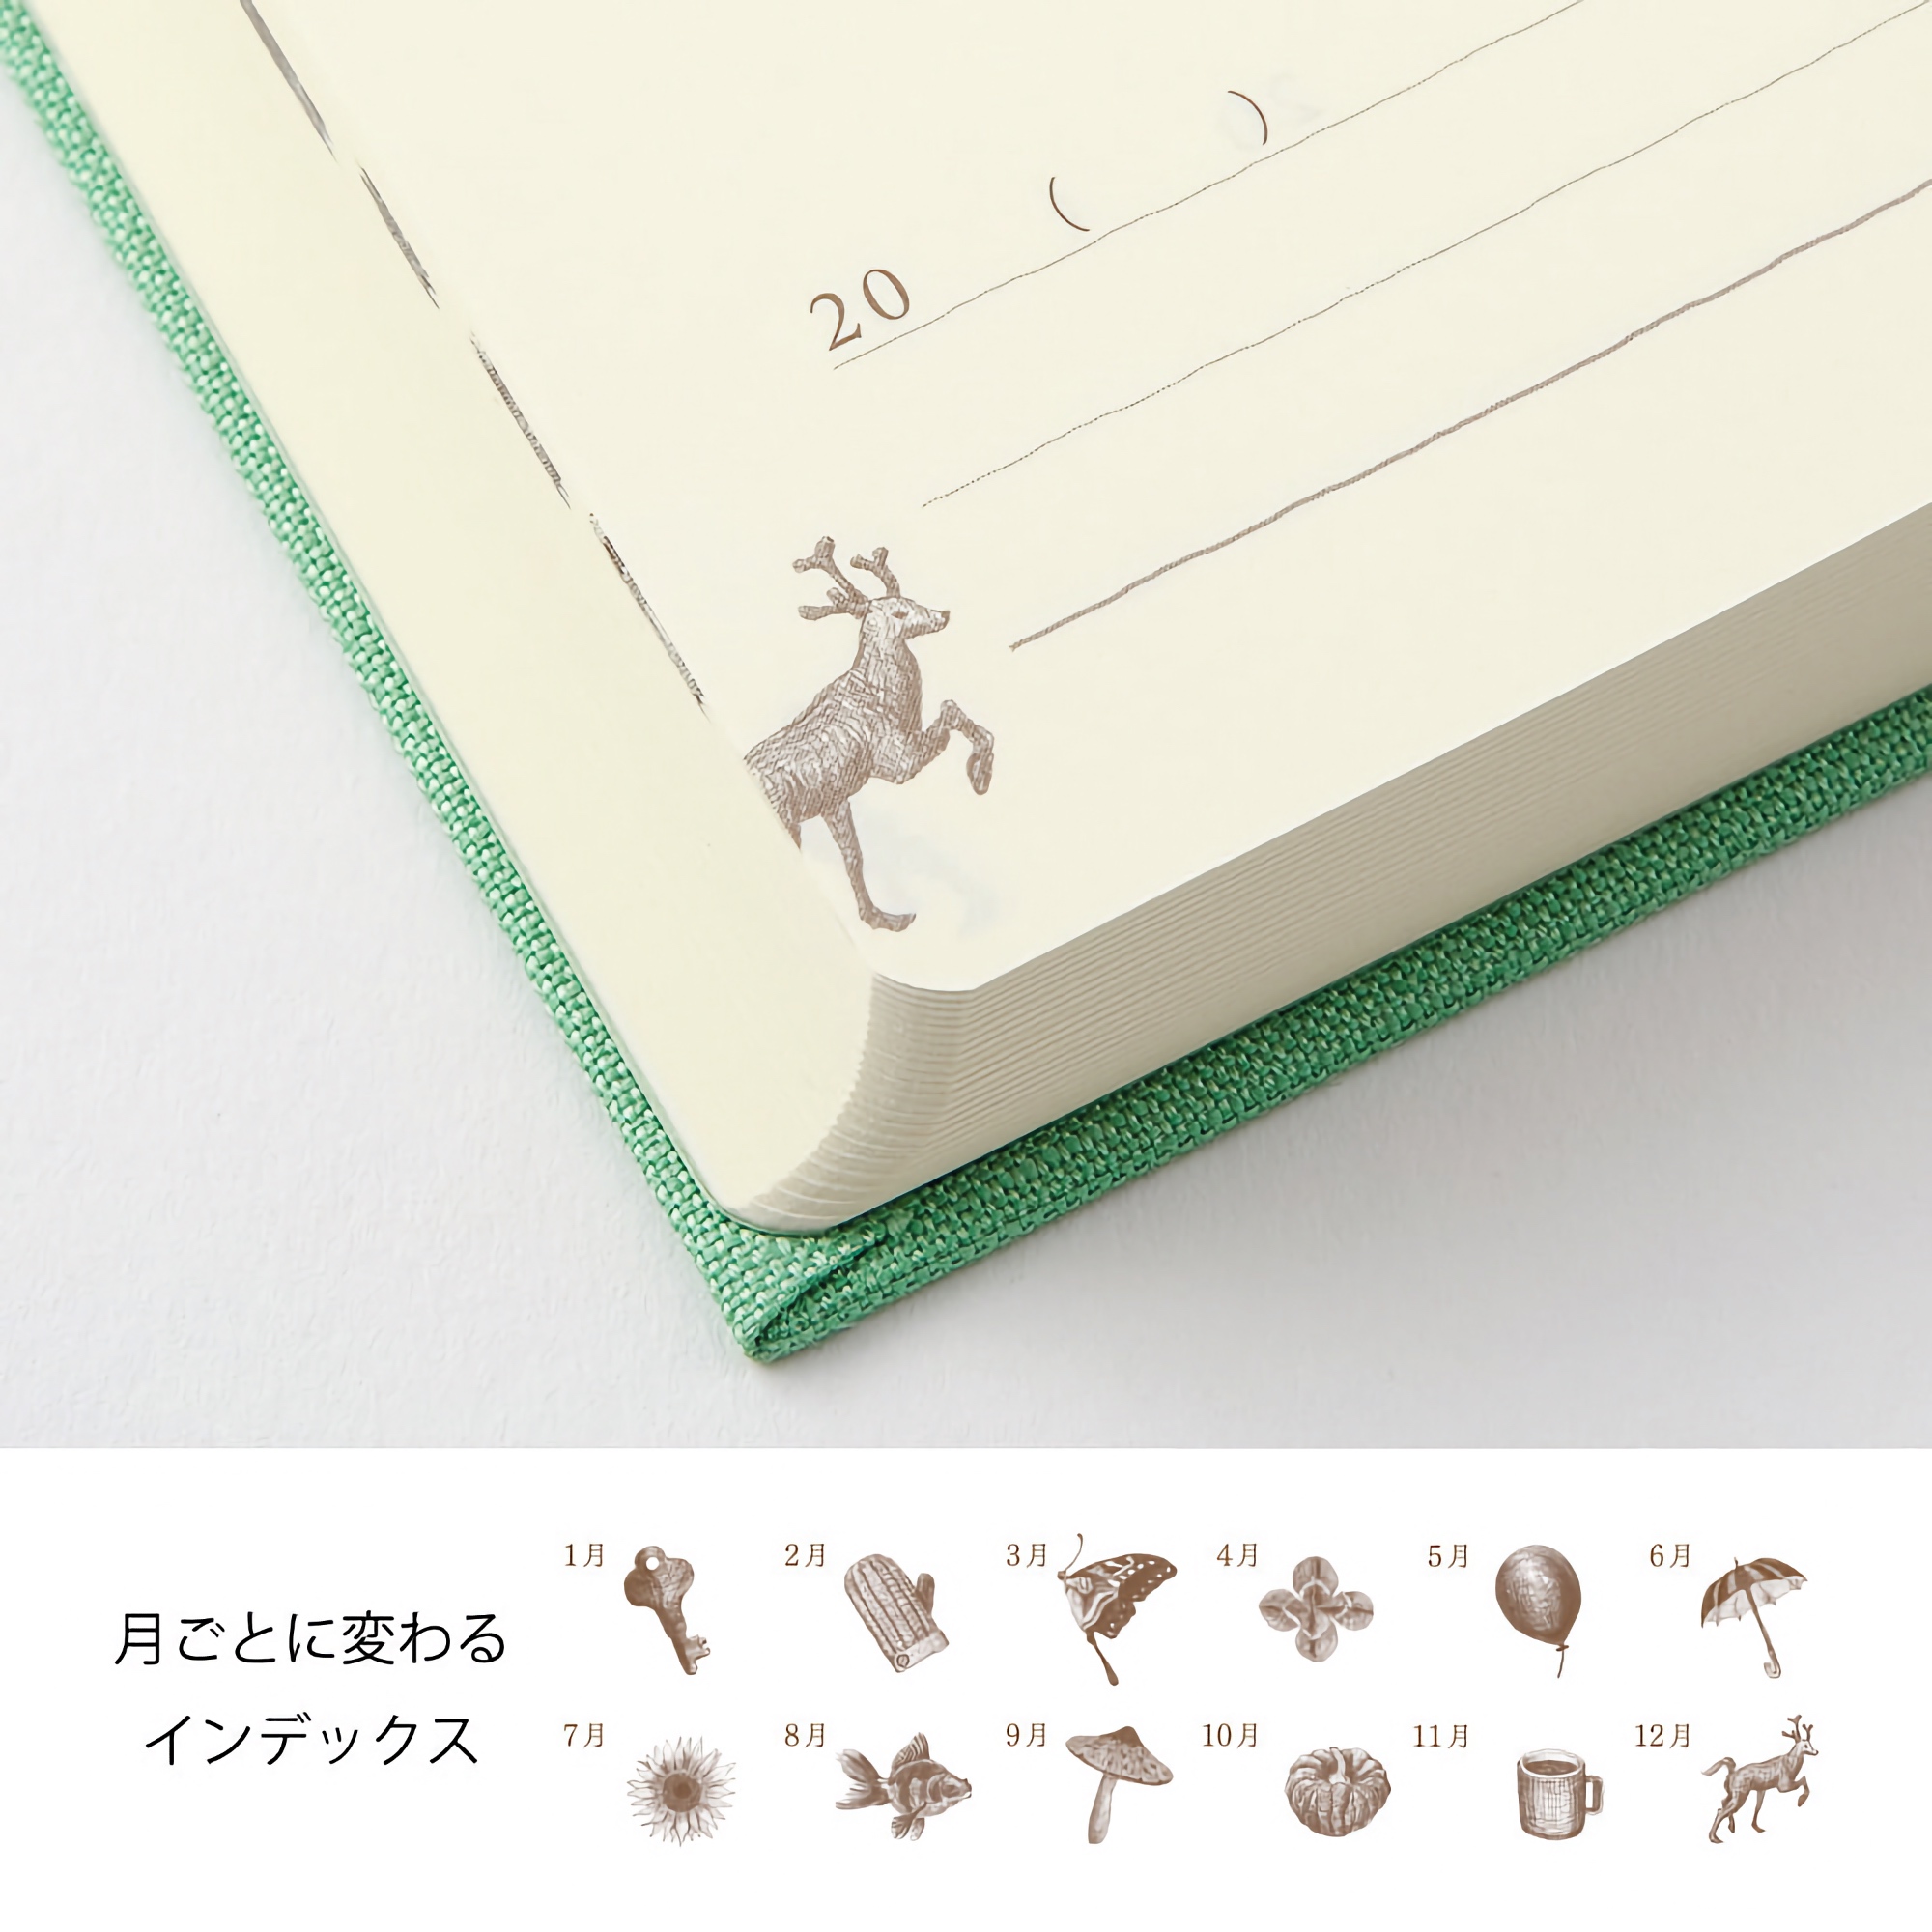 Midori 3 Years Diary Mini Green Limited Edition